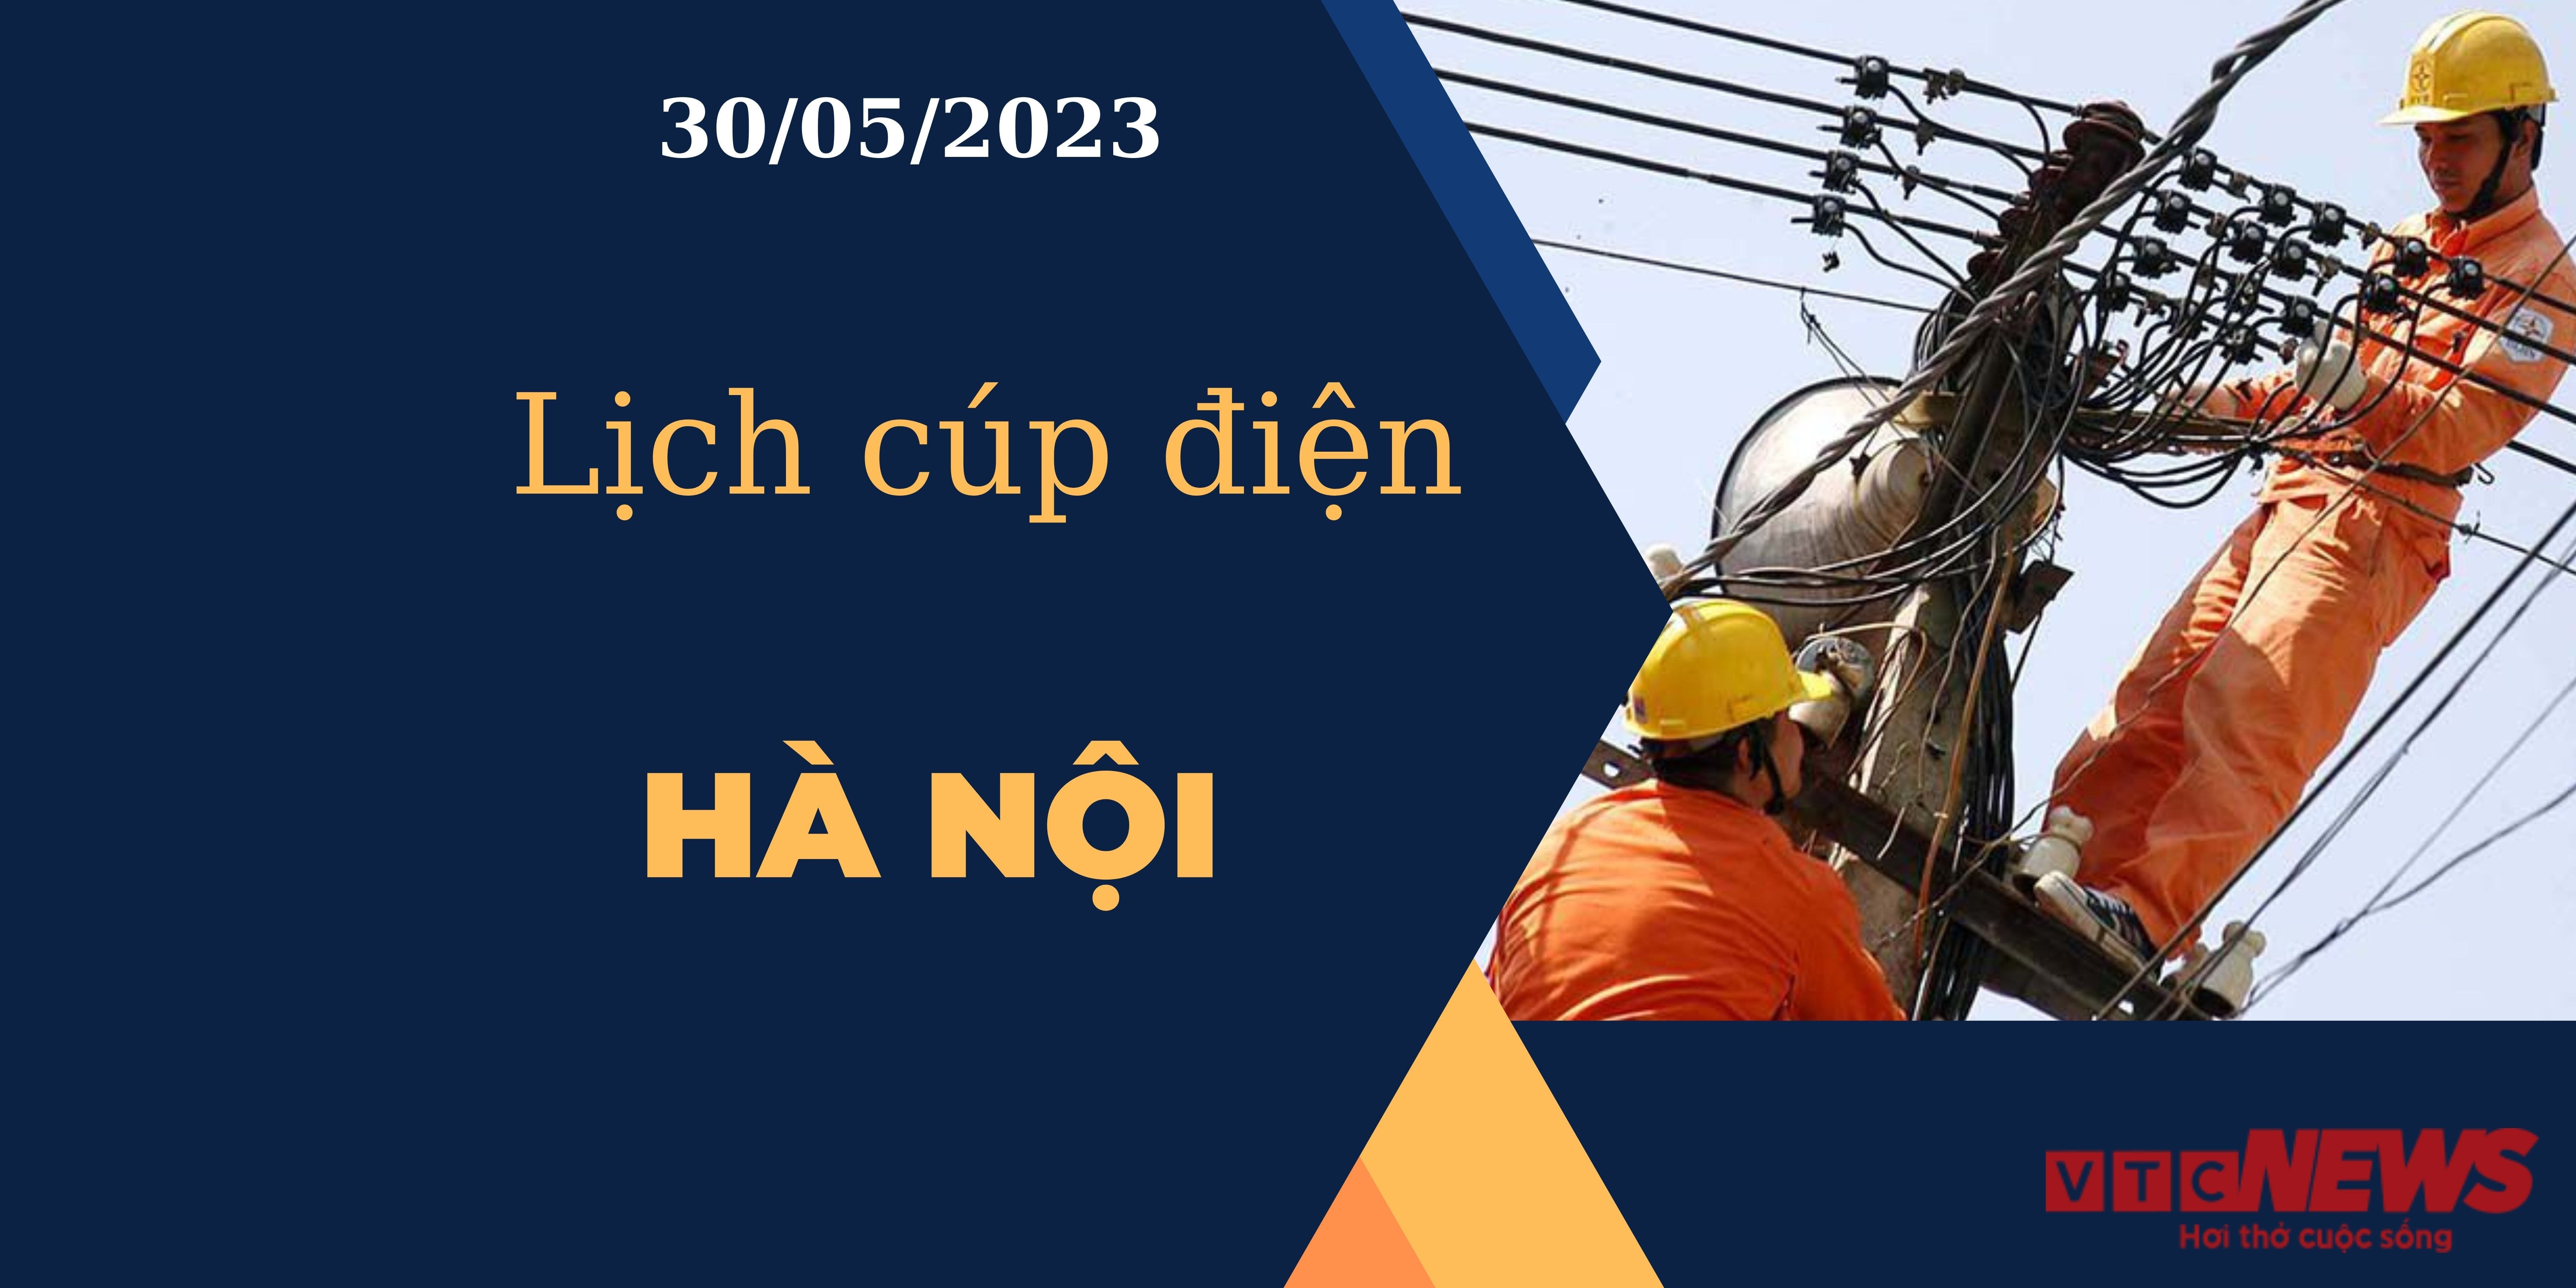 Lịch cúp điện hôm nay tại Hà Nội ngày 30/05/2023 - 1